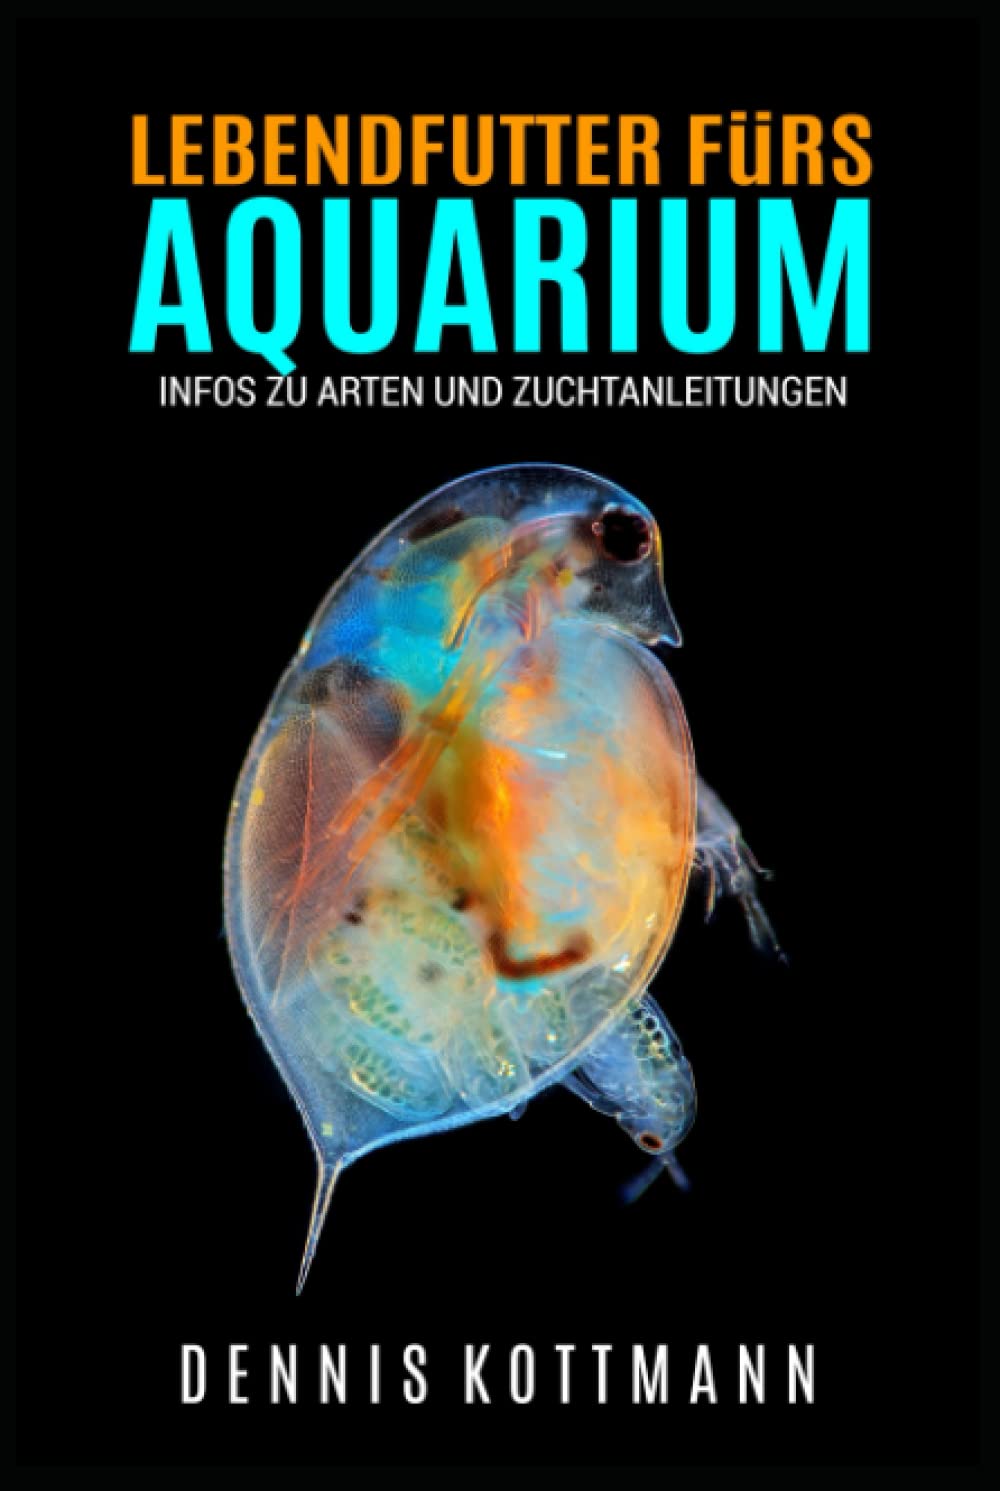 Lebendfutter fürs Aquarium - Wichtigkeit von Lebendfutter und Lebendfuttertiere im Porträt: Inklusive Zuchtanleitung für verschiedenen Lebendfuttertiere